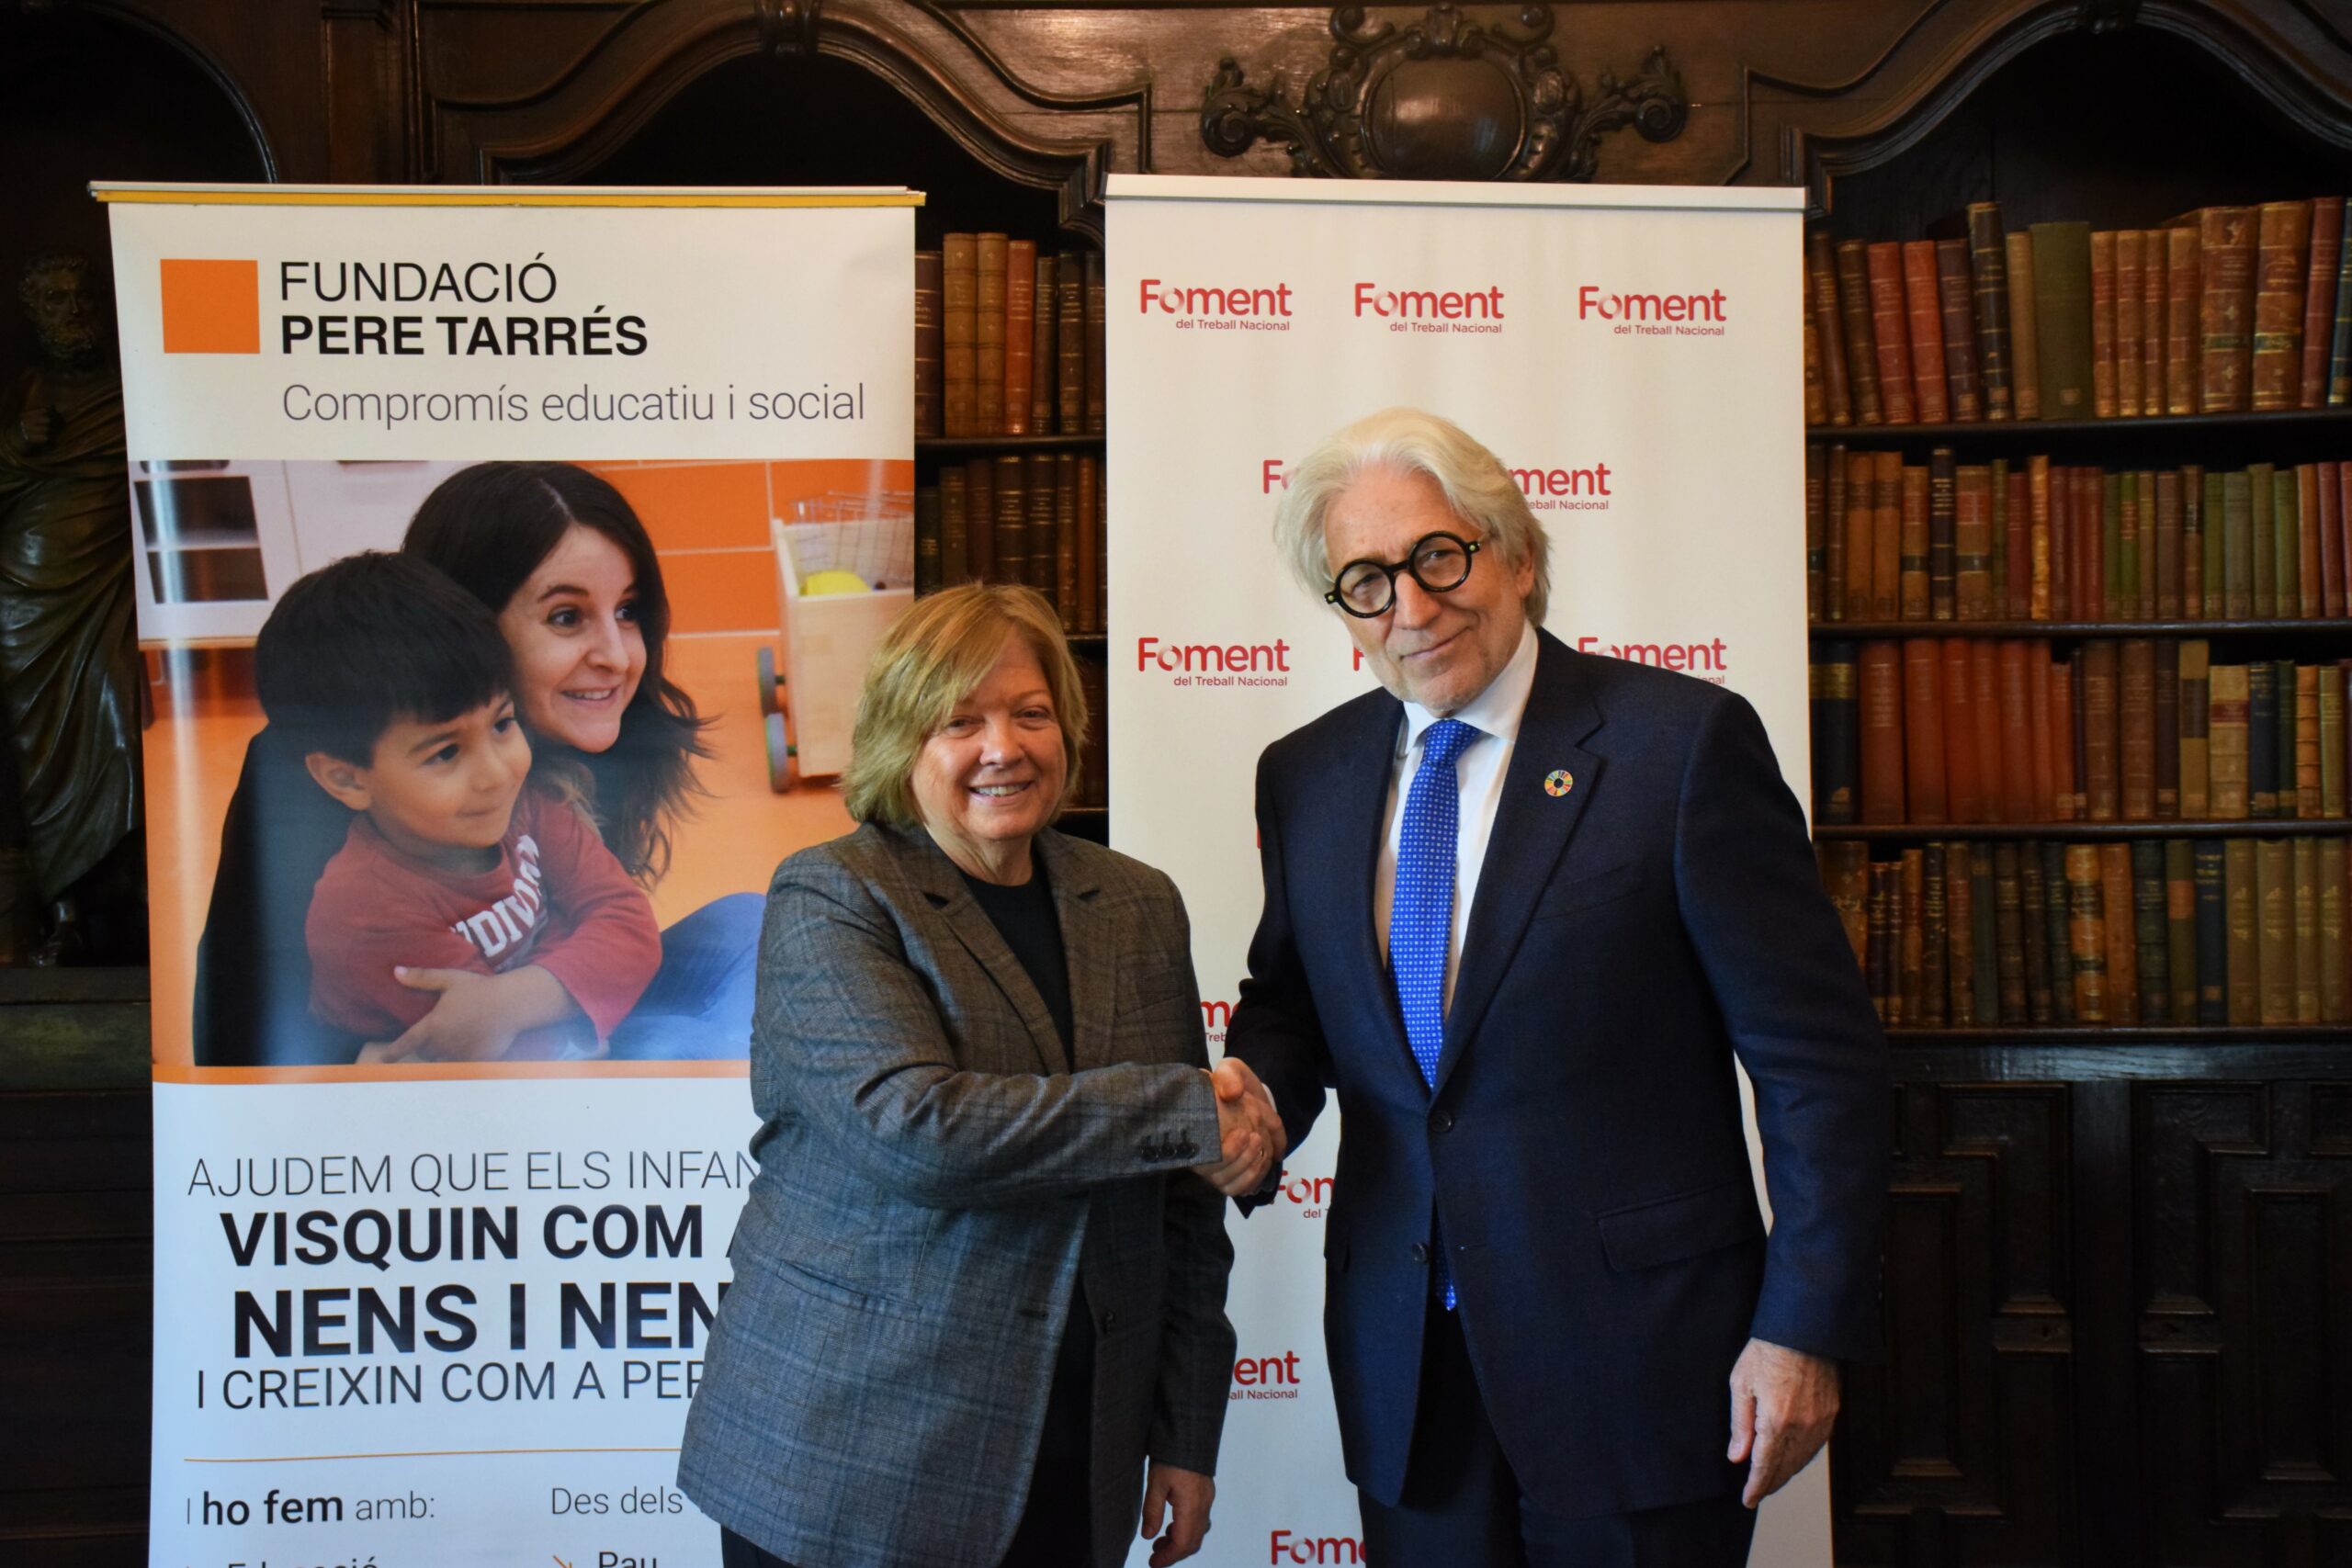 La Fundació Pere Tarrés i Foment signen un conveni per contribuir al benestar dels infants en situació vulnerable